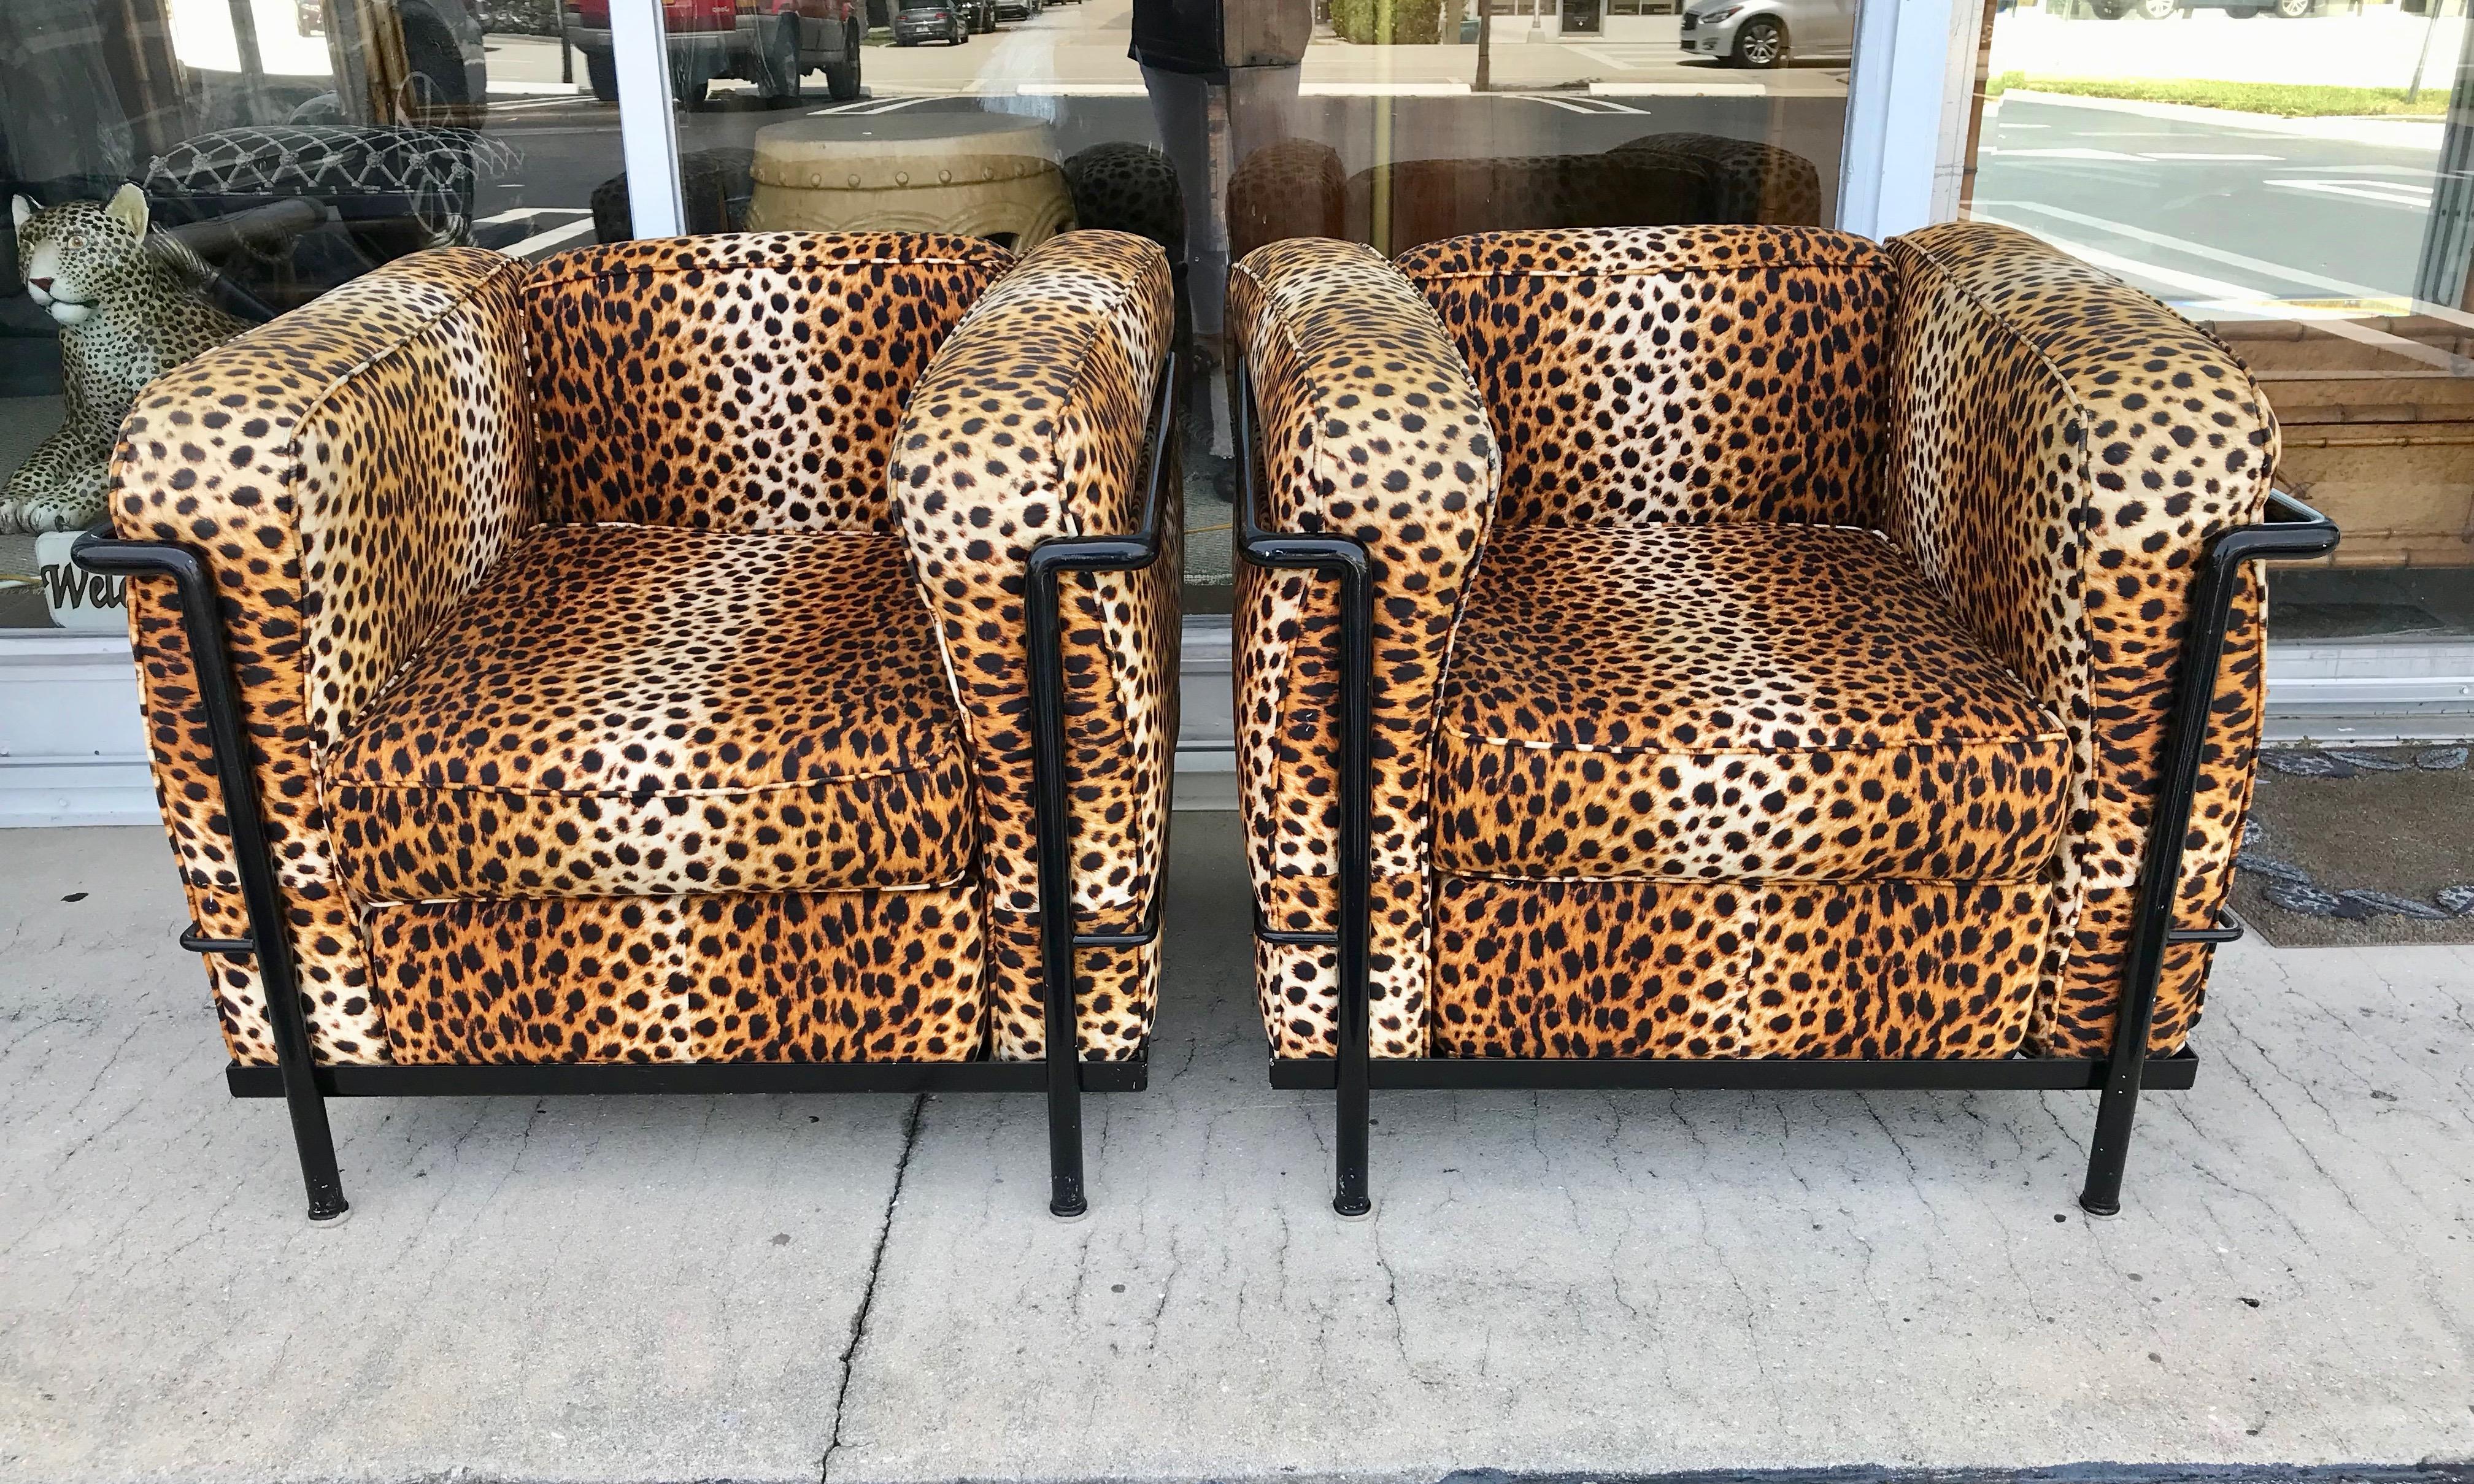 Dramatische gepolsterte Stühle mit Leopardenfellimitat in einem Metallgestell.
Optisch ansprechend und komfortabel gebaut.